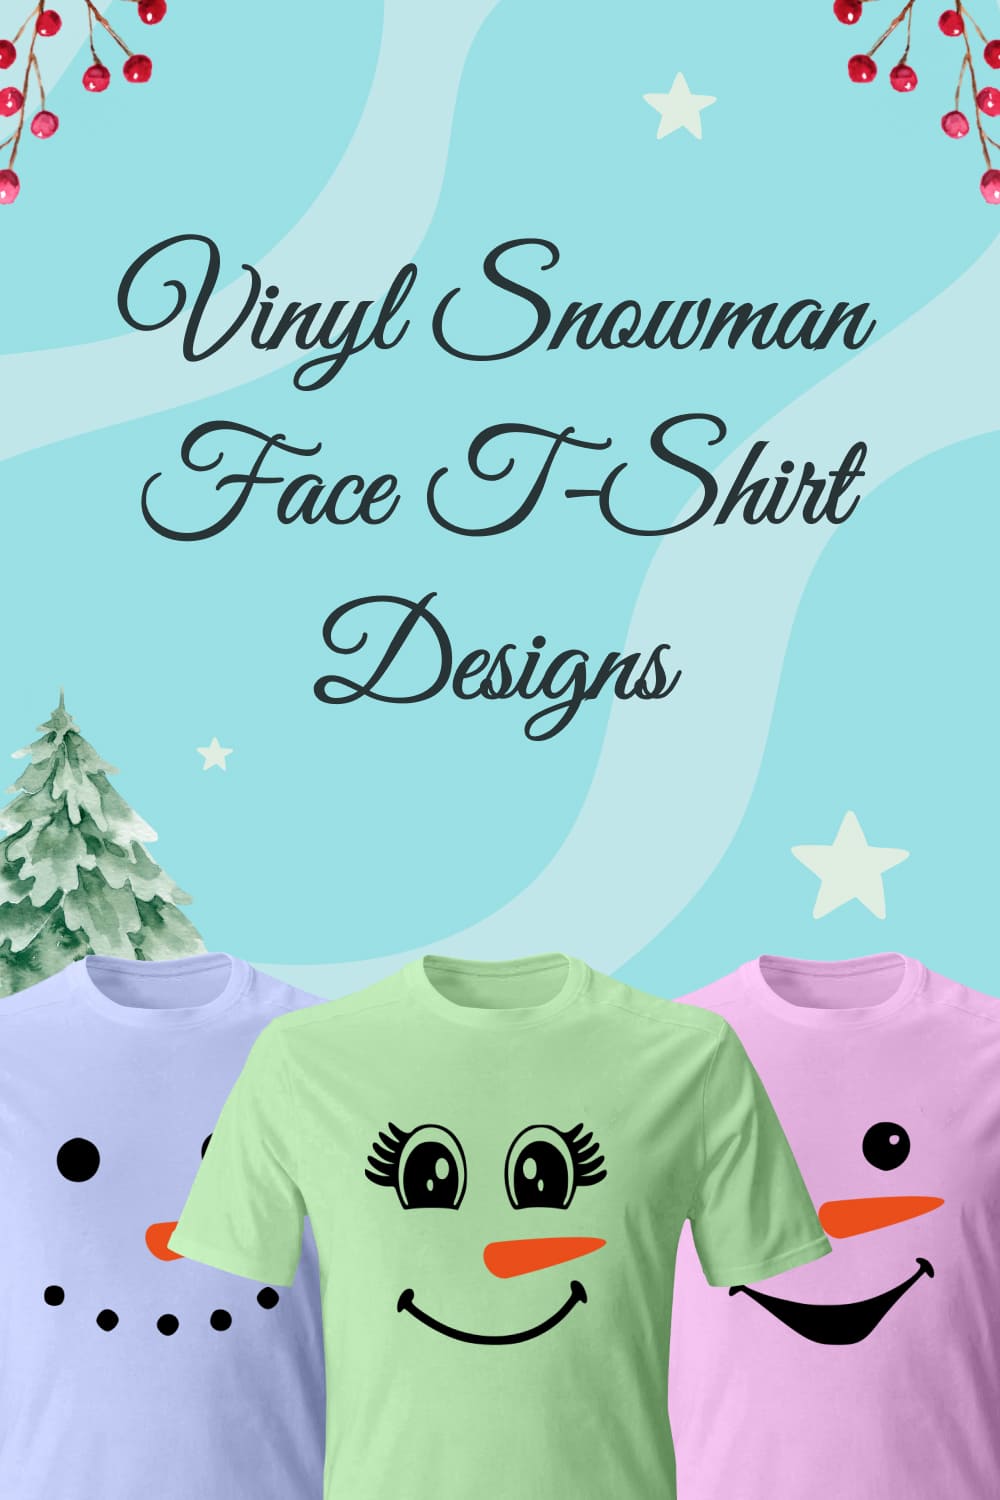 vinyl snowman face t shirt designs 03 291